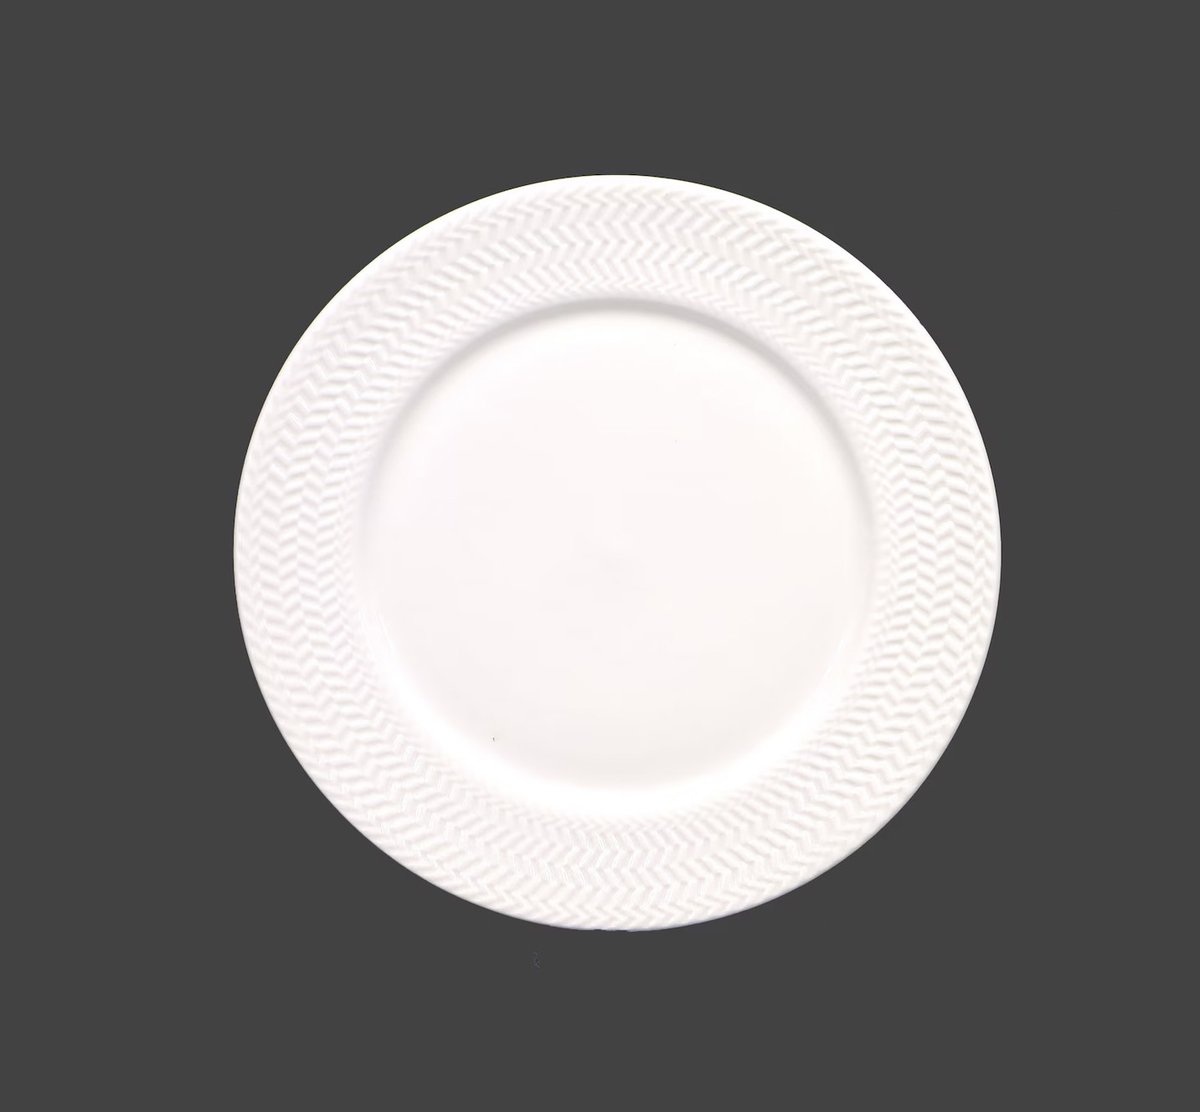 Stokes Wicker White Chef's favorite all-white dinner plate embossed wicker rim. etsy.me/3Qi03qL via @Etsy #BuyfromGroovy #antiqueshop #tabledecor #tableware #dinnerware #allwhitedishes #Chefsfavorite #Stokes #StokesWickerWhite #WickerWhite #EtsySellers